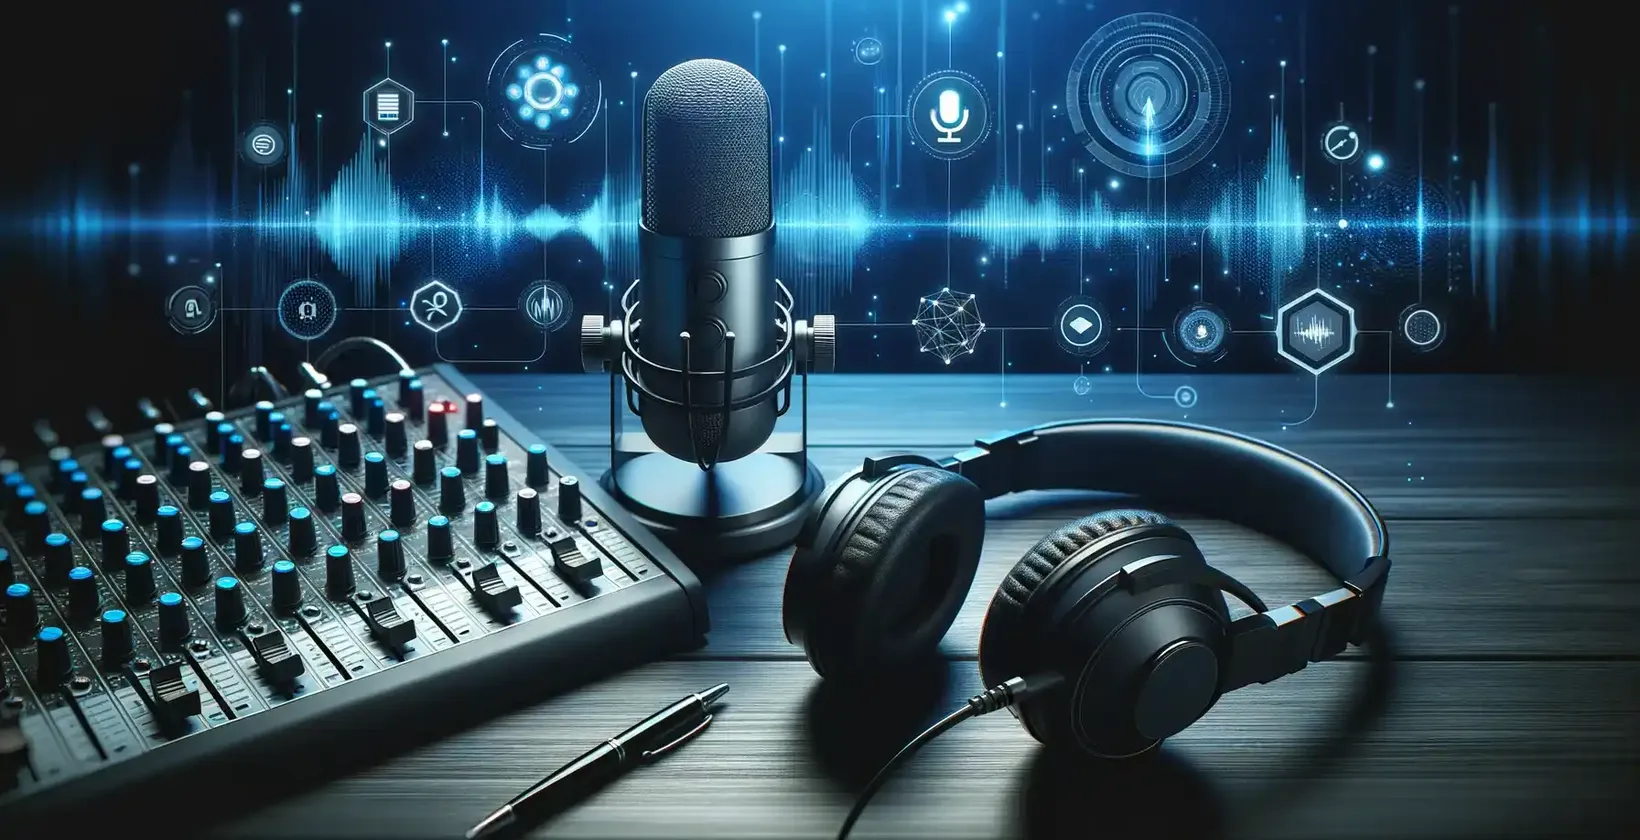 Podcast'lerin erişilebilirliği, mikrofon, kulaklık ve ses dalga formlarını gösteren bir ekran içeren stüdyo ekipmanıyla sağlanır.